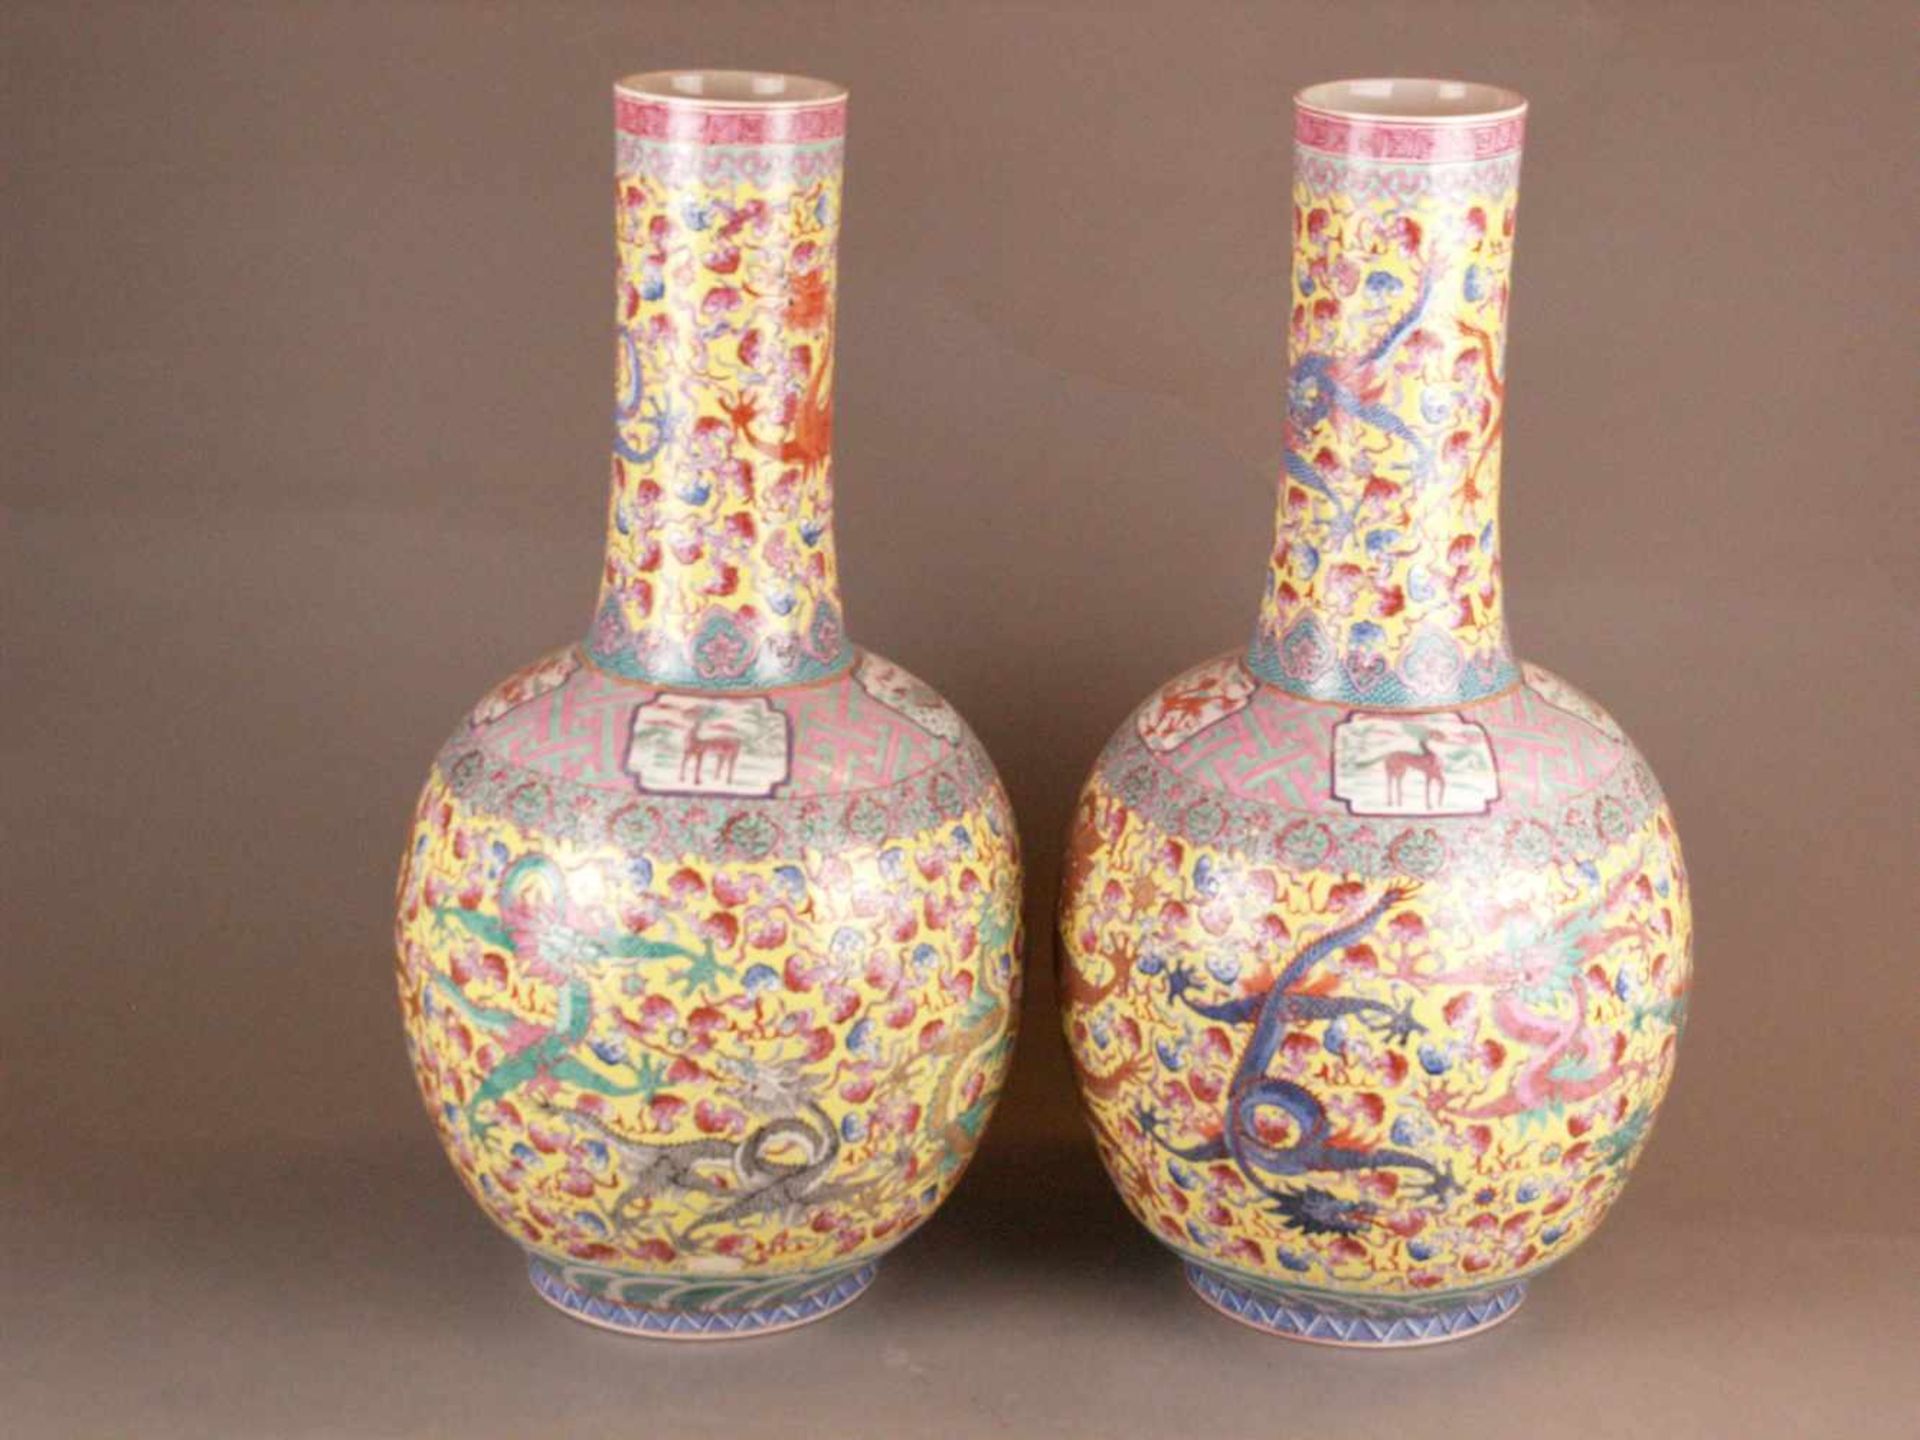 Paar Bodenvasen - China 20.Jh.,Tian qiu ping-Typus, üppiger Dekor in polychromen Emailfarben, auf